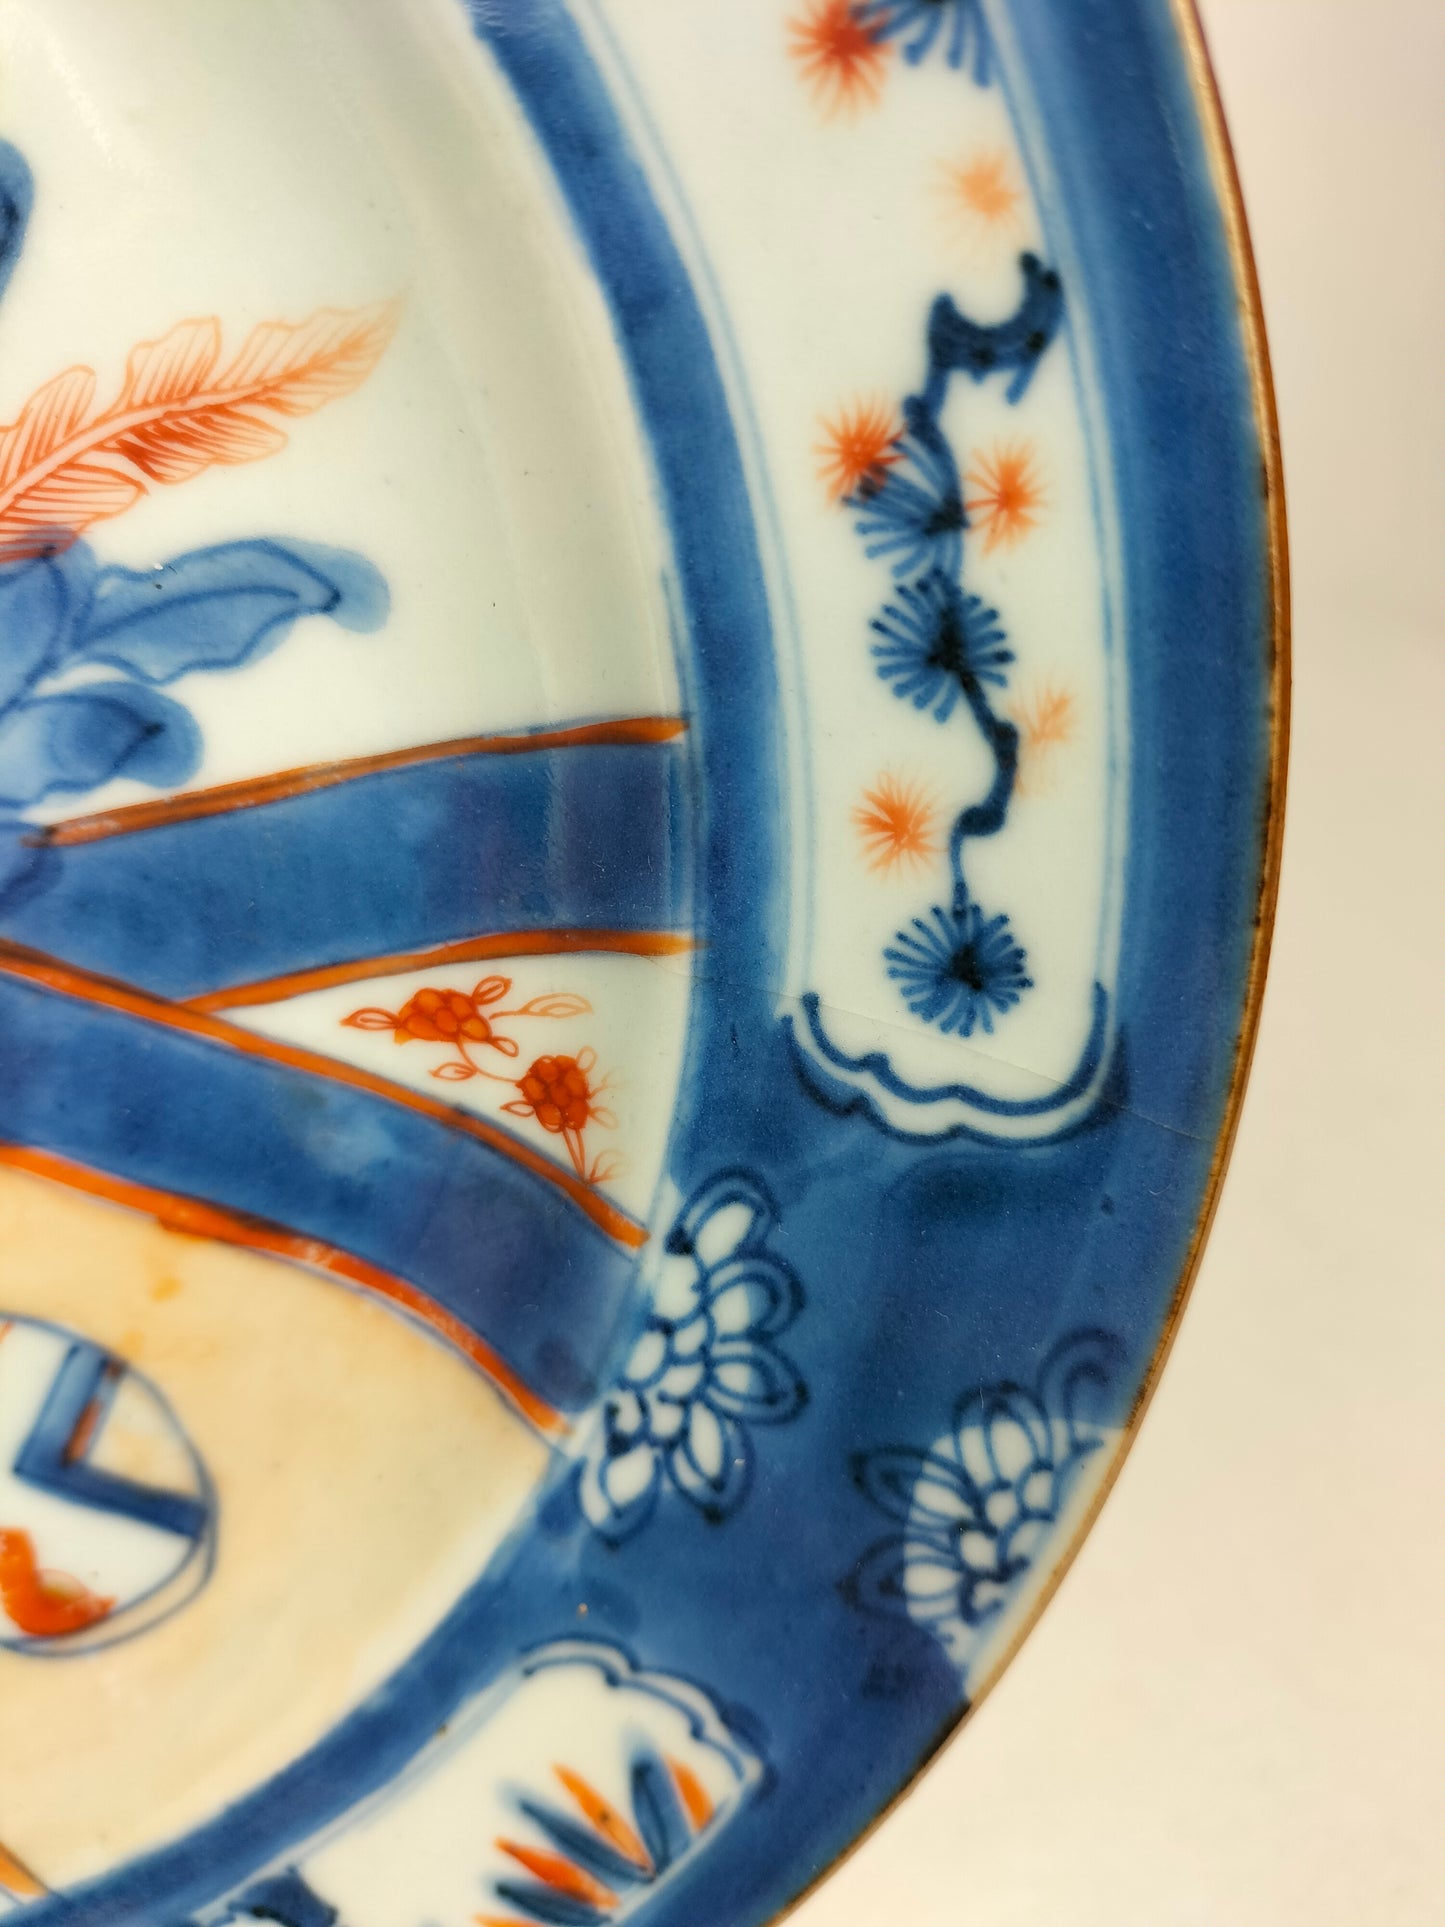 Cặp đĩa imari cổ của Trung Quốc với cảnh vườn // Nhà Thanh - thế kỷ 18 - Khang Hy